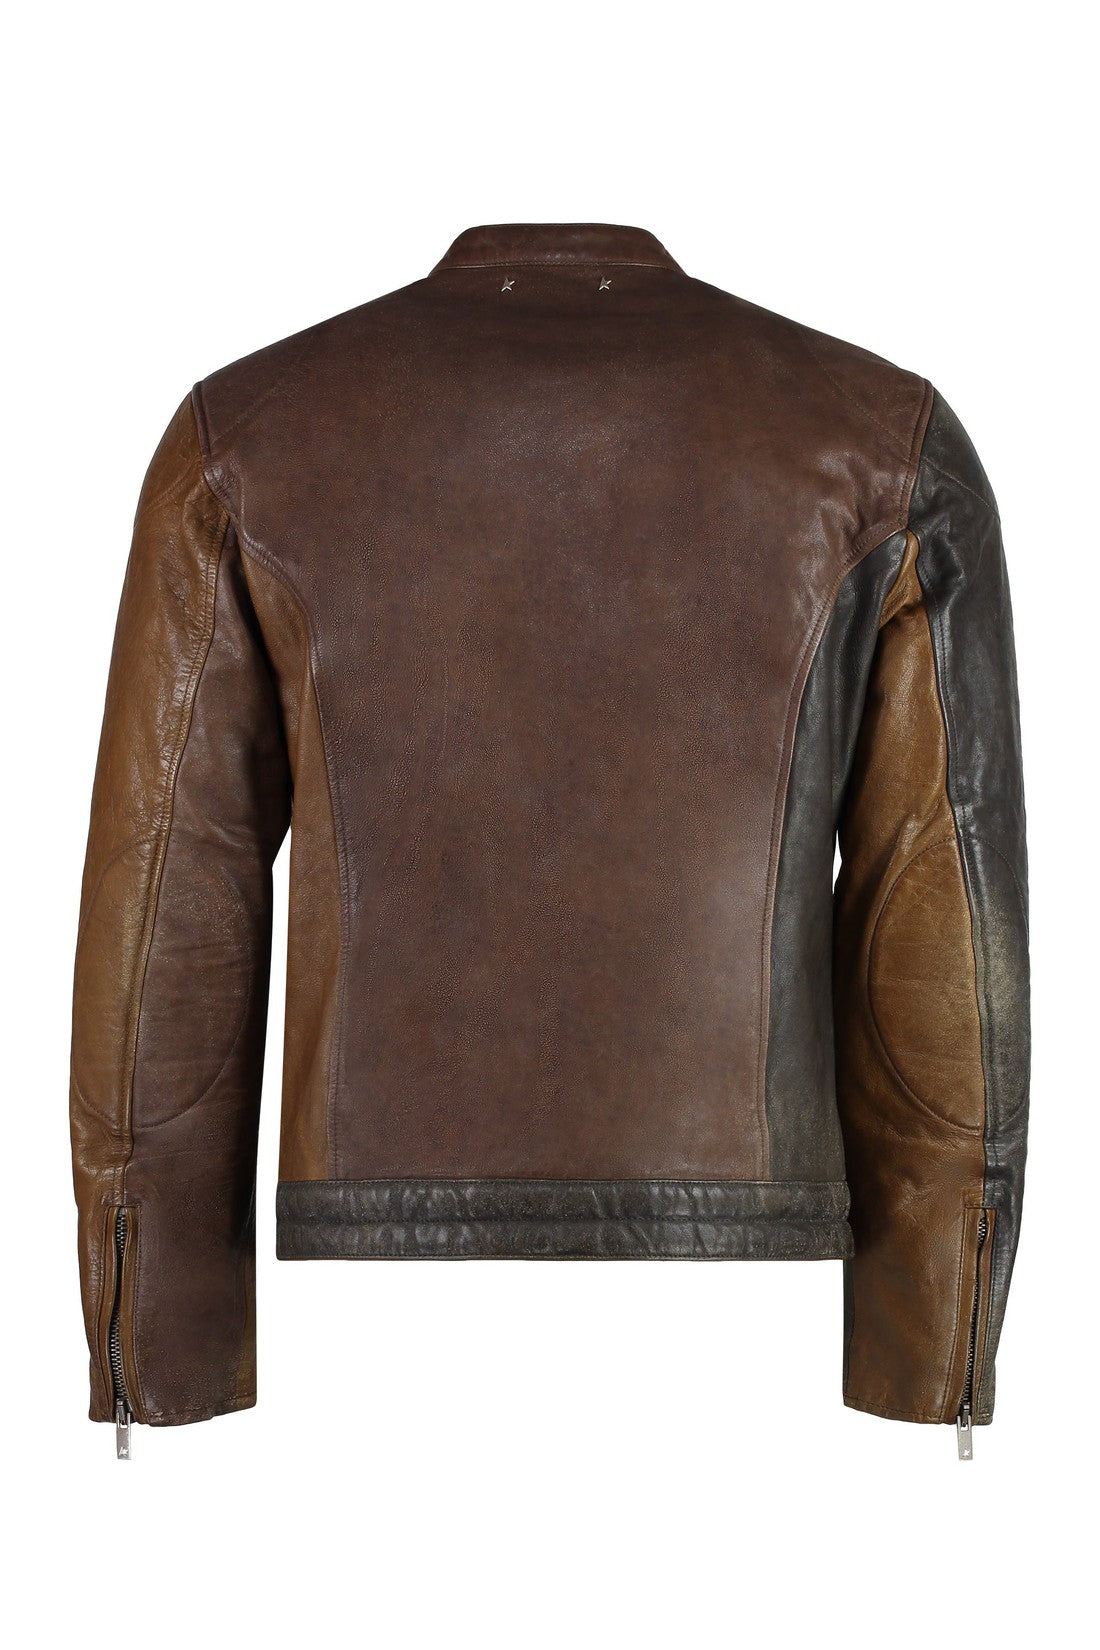 Golden Goose-OUTLET-SALE-Leather jacket-ARCHIVIST